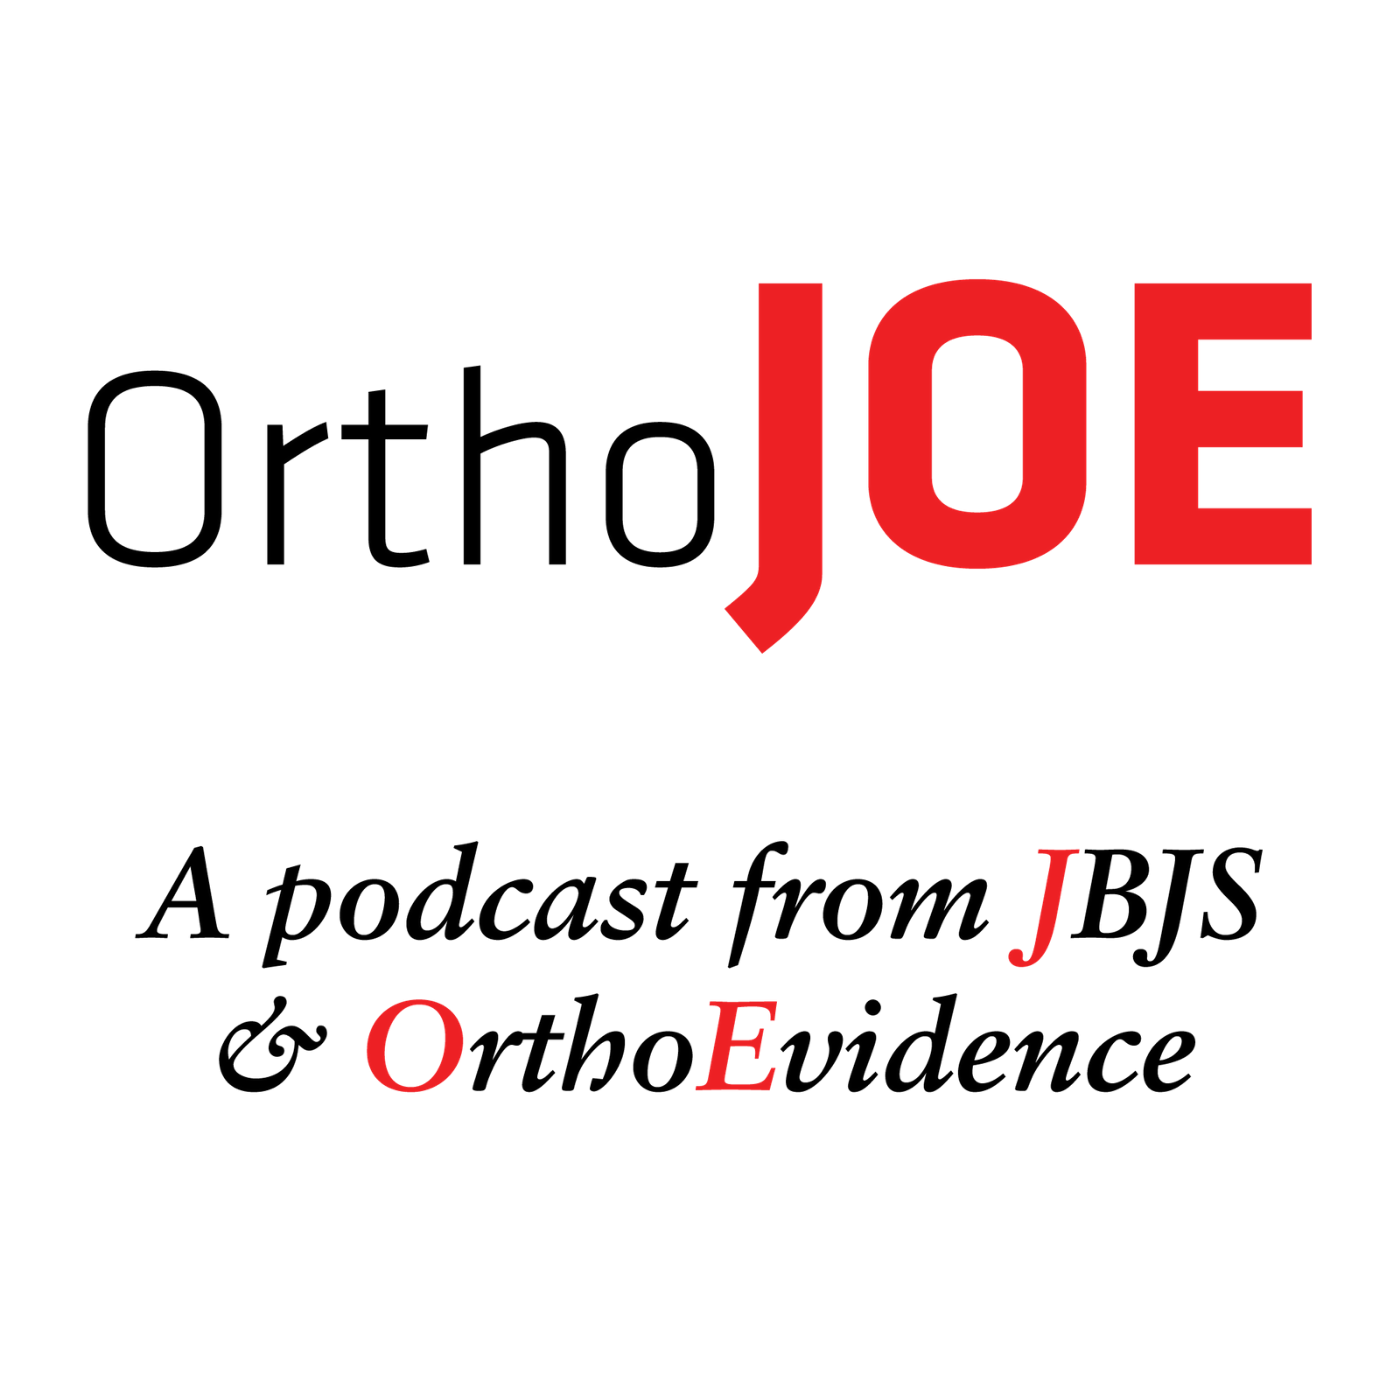 Orthobiologics in Orthopaedics: Essential Questions